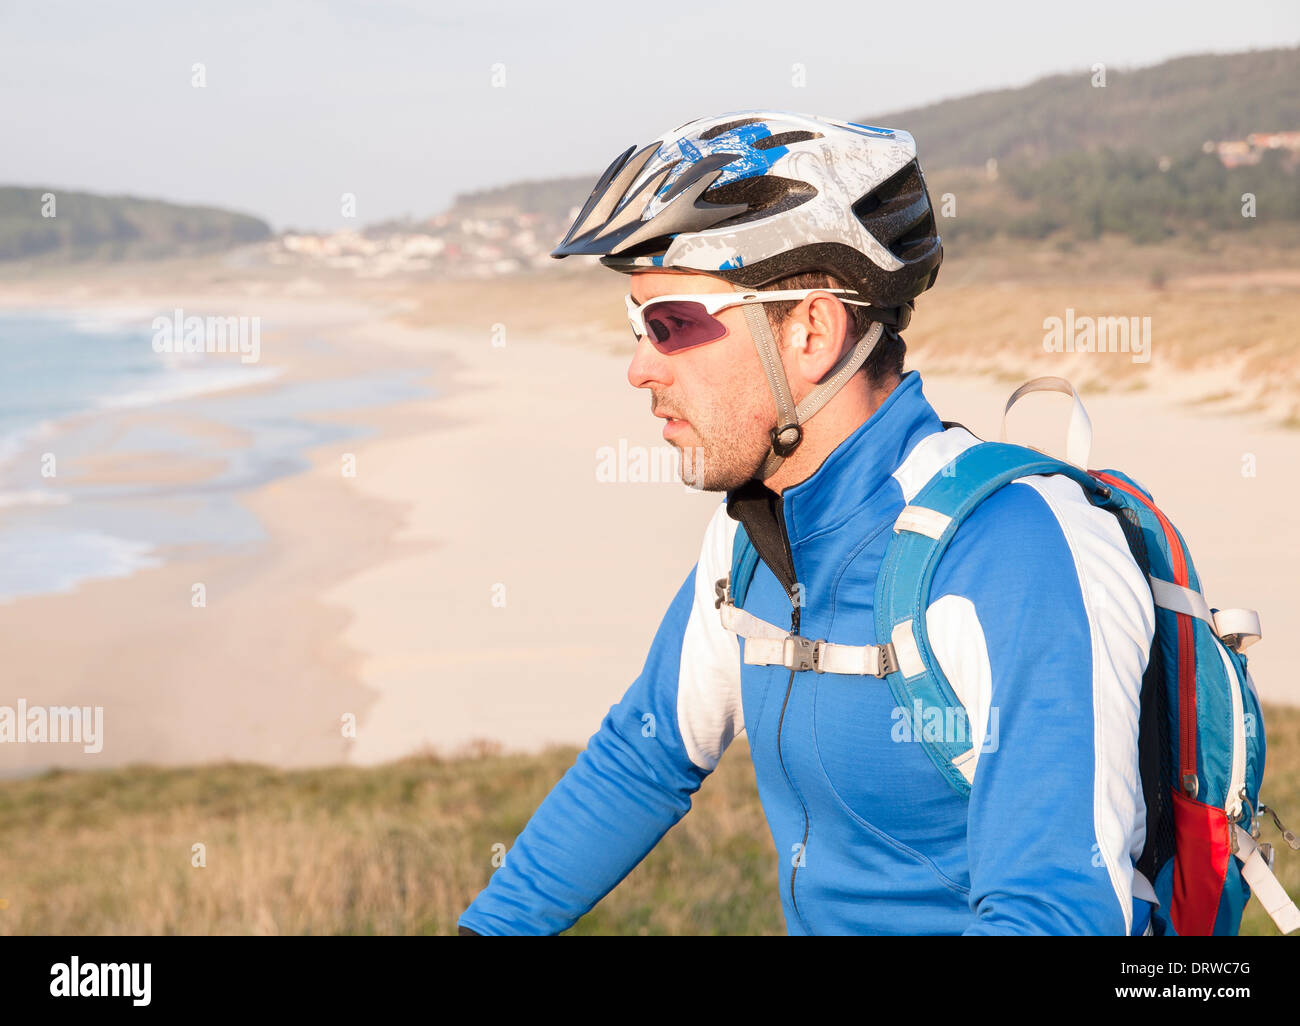 Cycliste de nature à côté. L'homme est dehors et il y a une plage à l'arrière-plan Banque D'Images